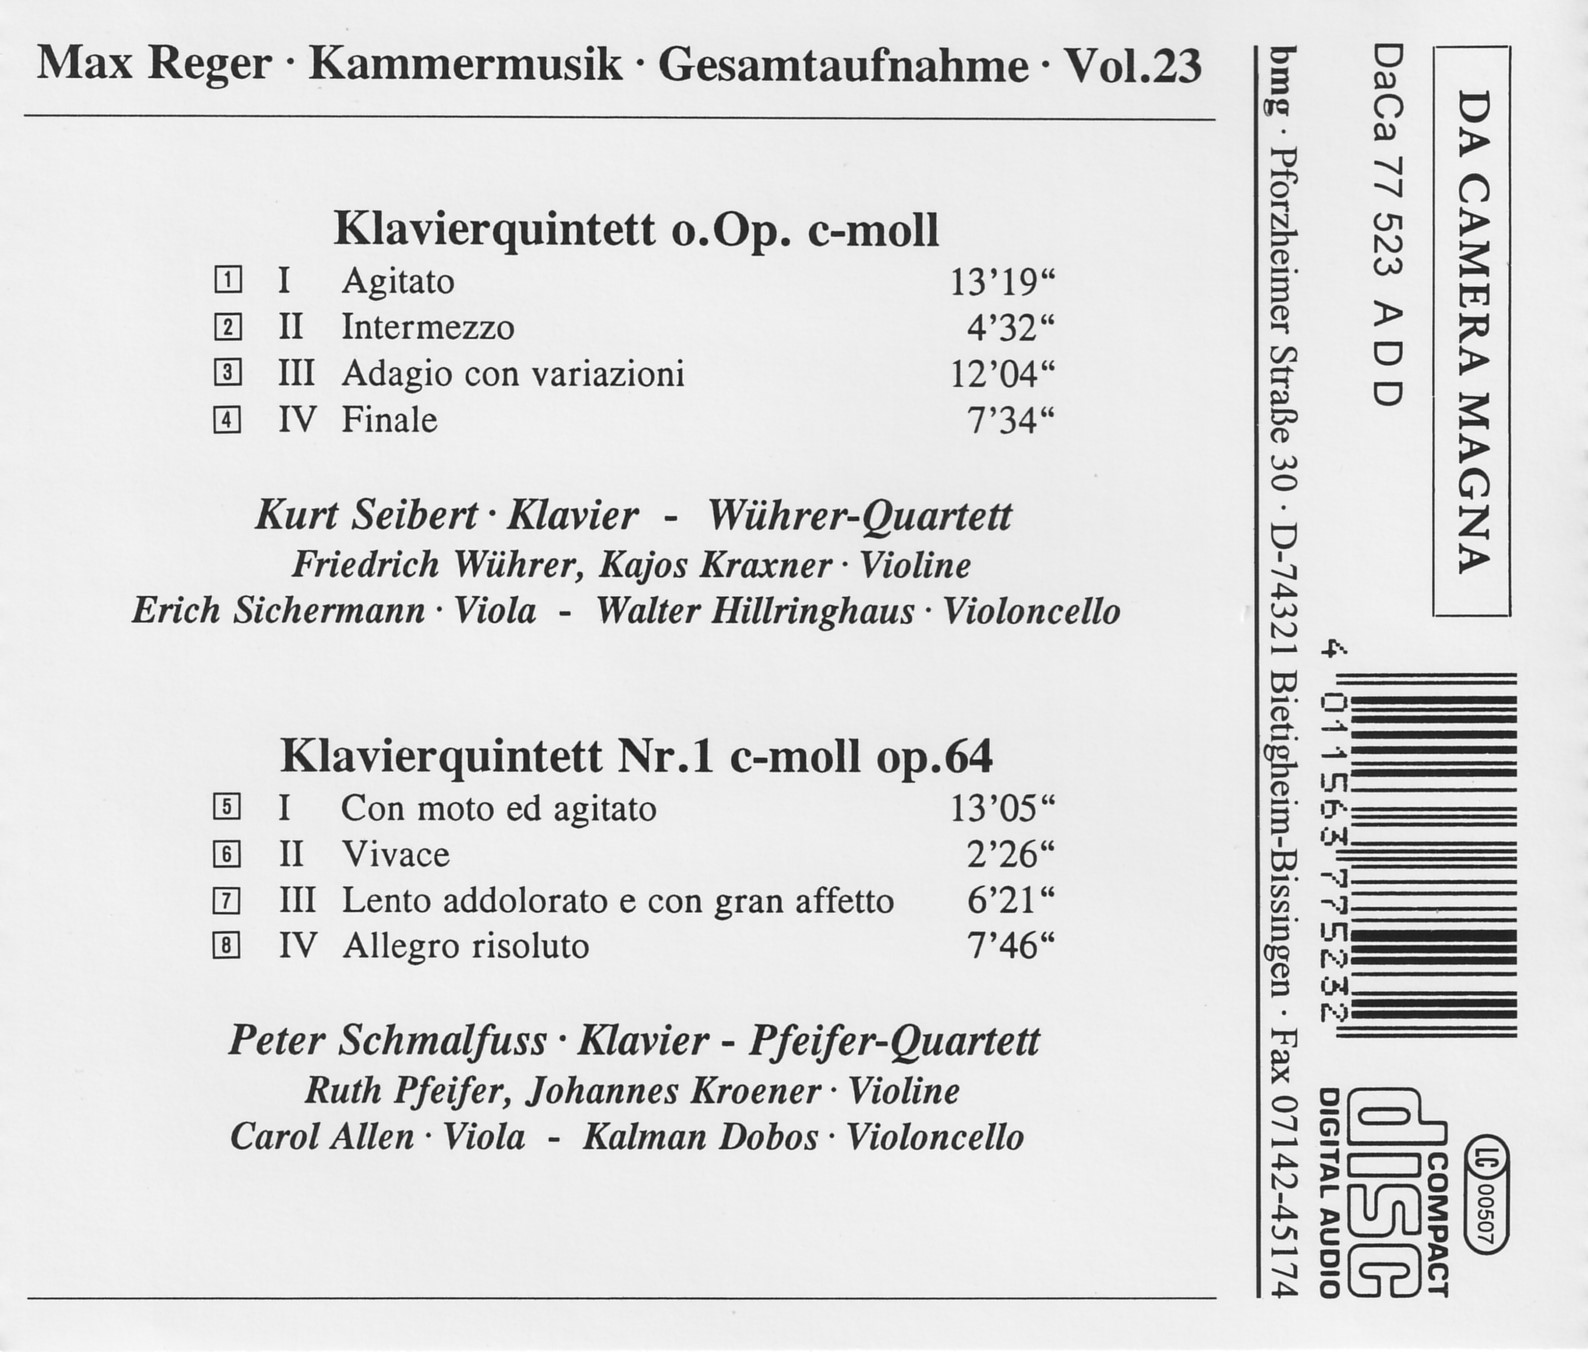 Max Reger - Kammermusik komplett Vol. 23